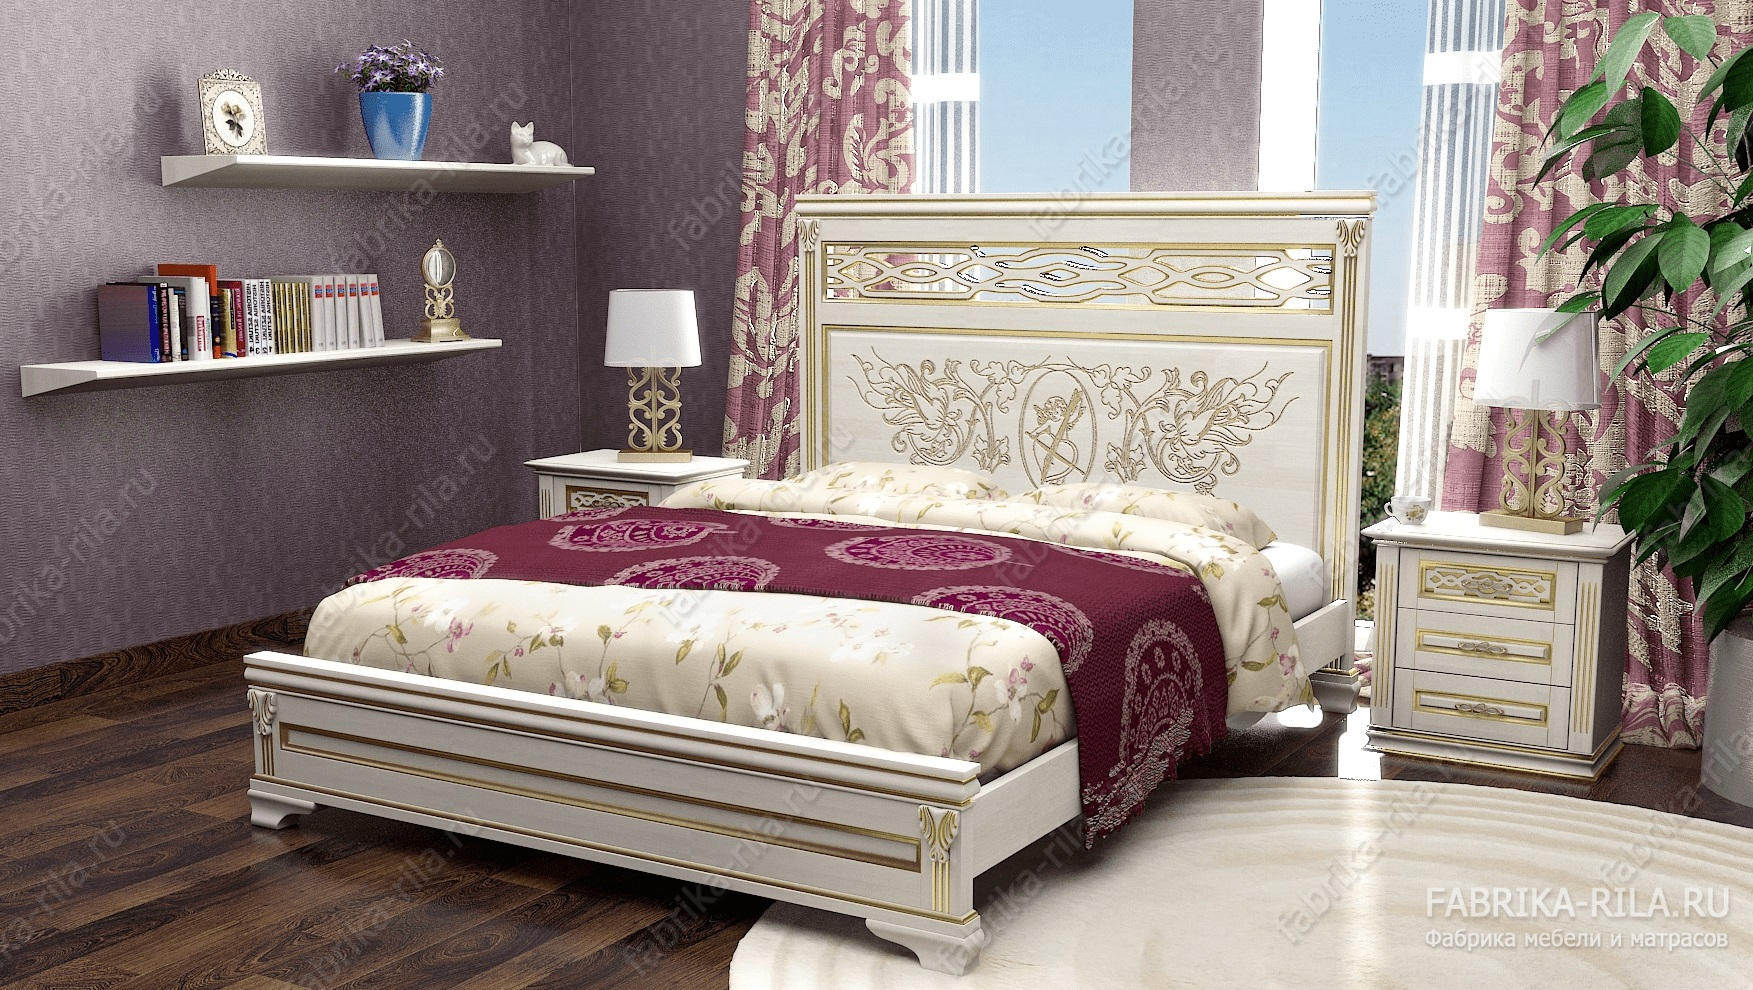 Кровать Lirоna 3 — 160x200 см. из сосны